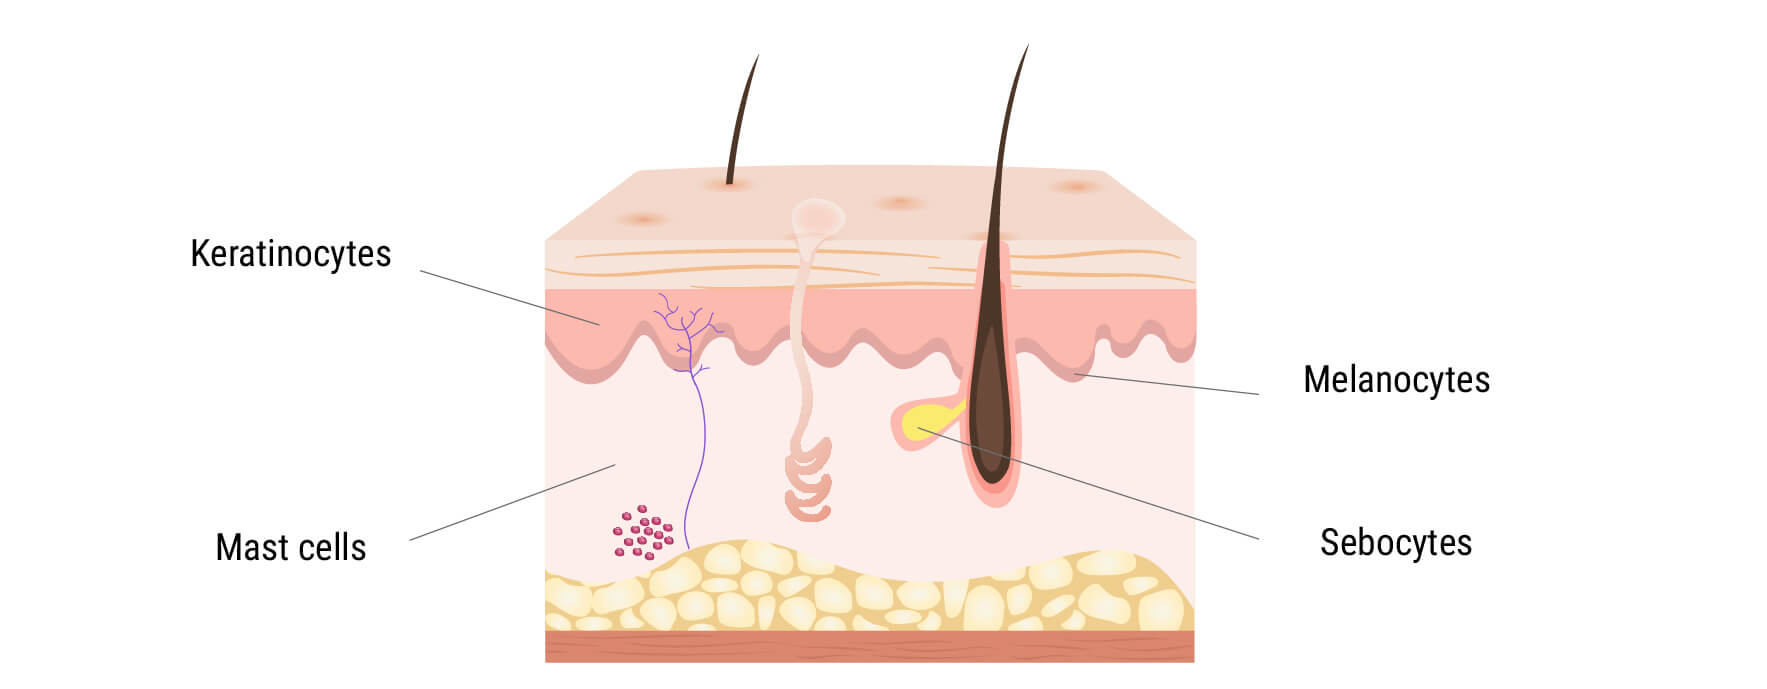 El sistema endocannabinoide en la piel